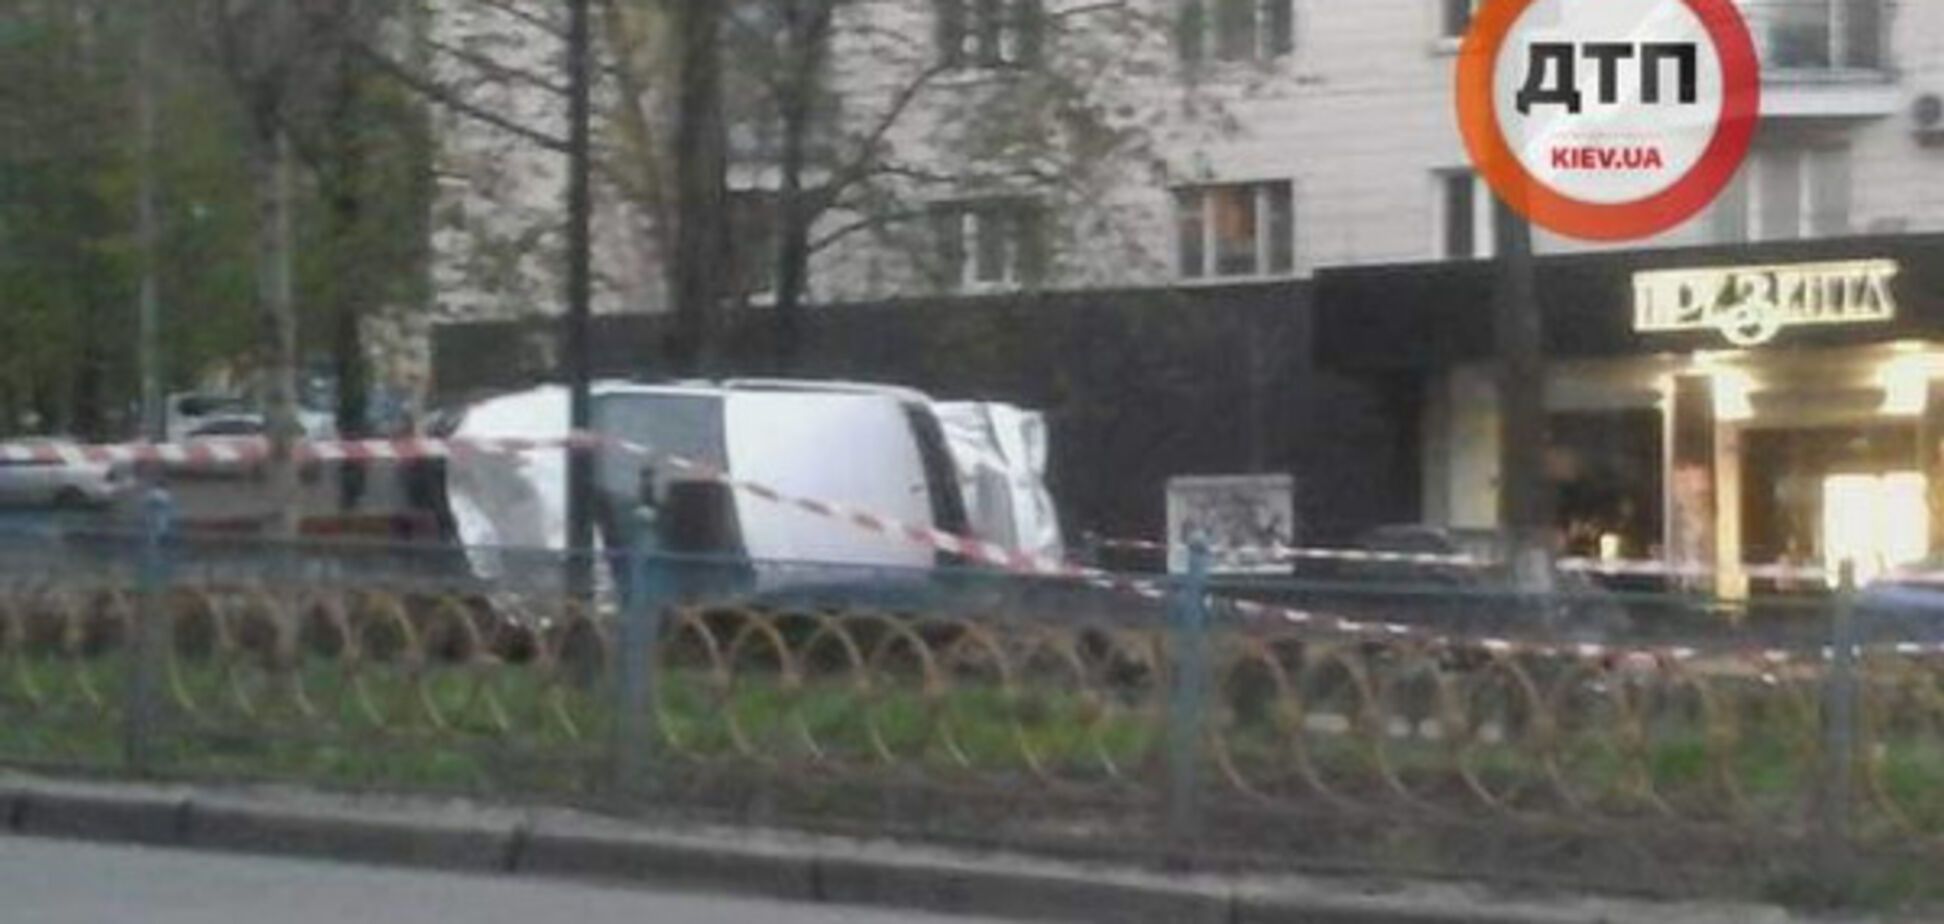 Казусное ДТП в Киеве: водитель вылетел на бульвар. Опубликованы фото